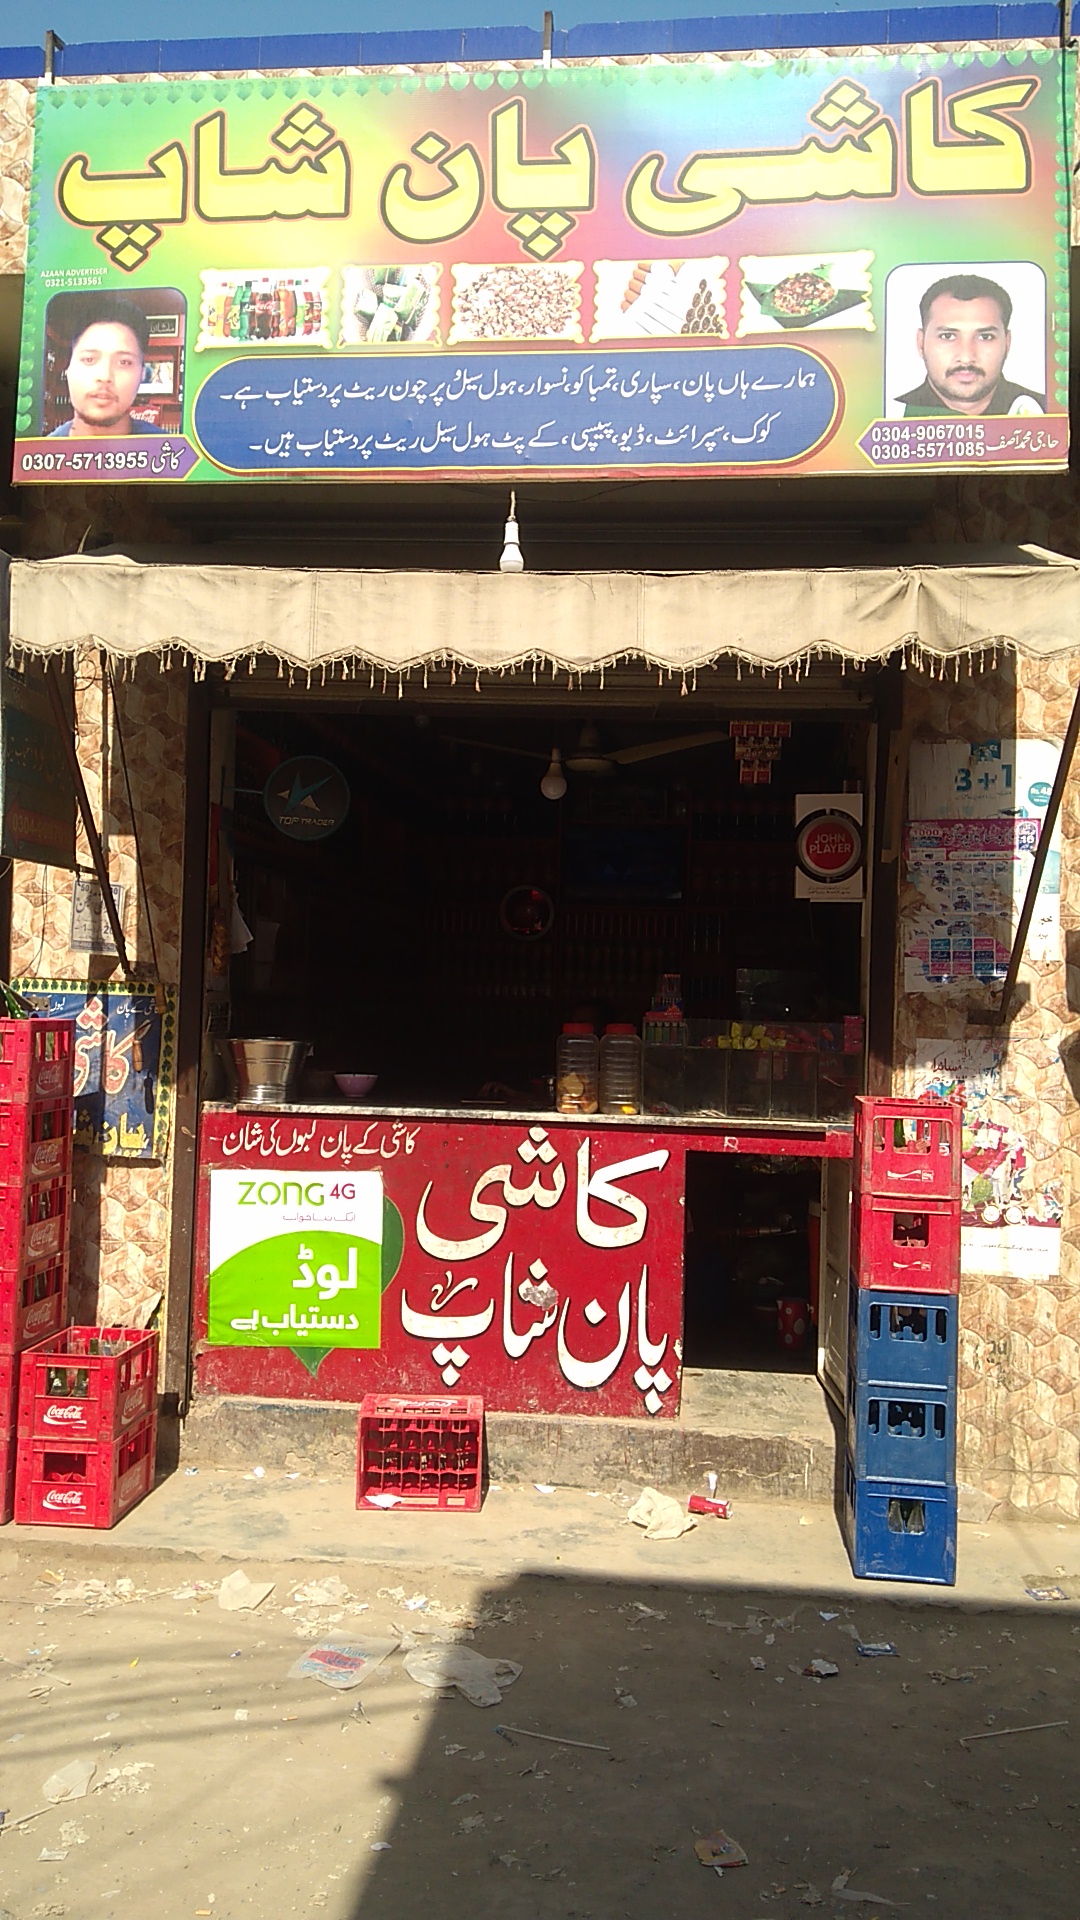 Kashi pan shop